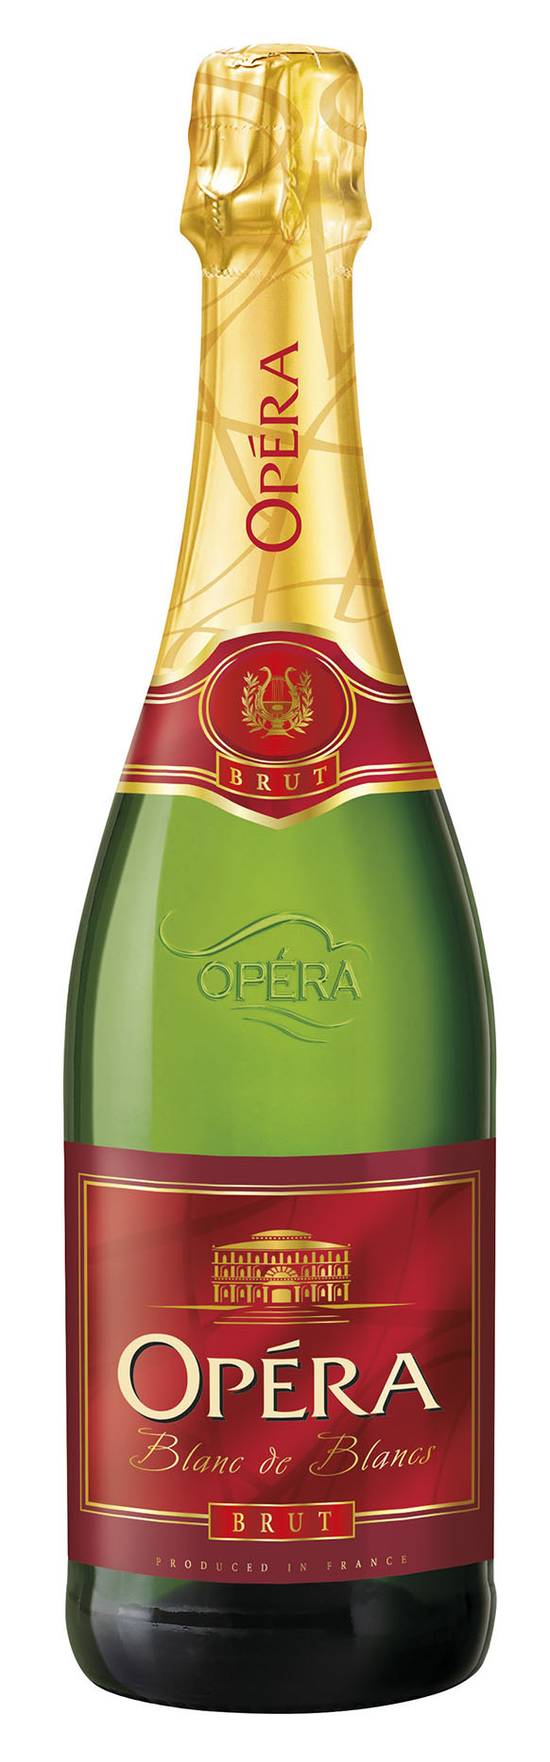 Opera - Vin mousseux brut (750 ml)